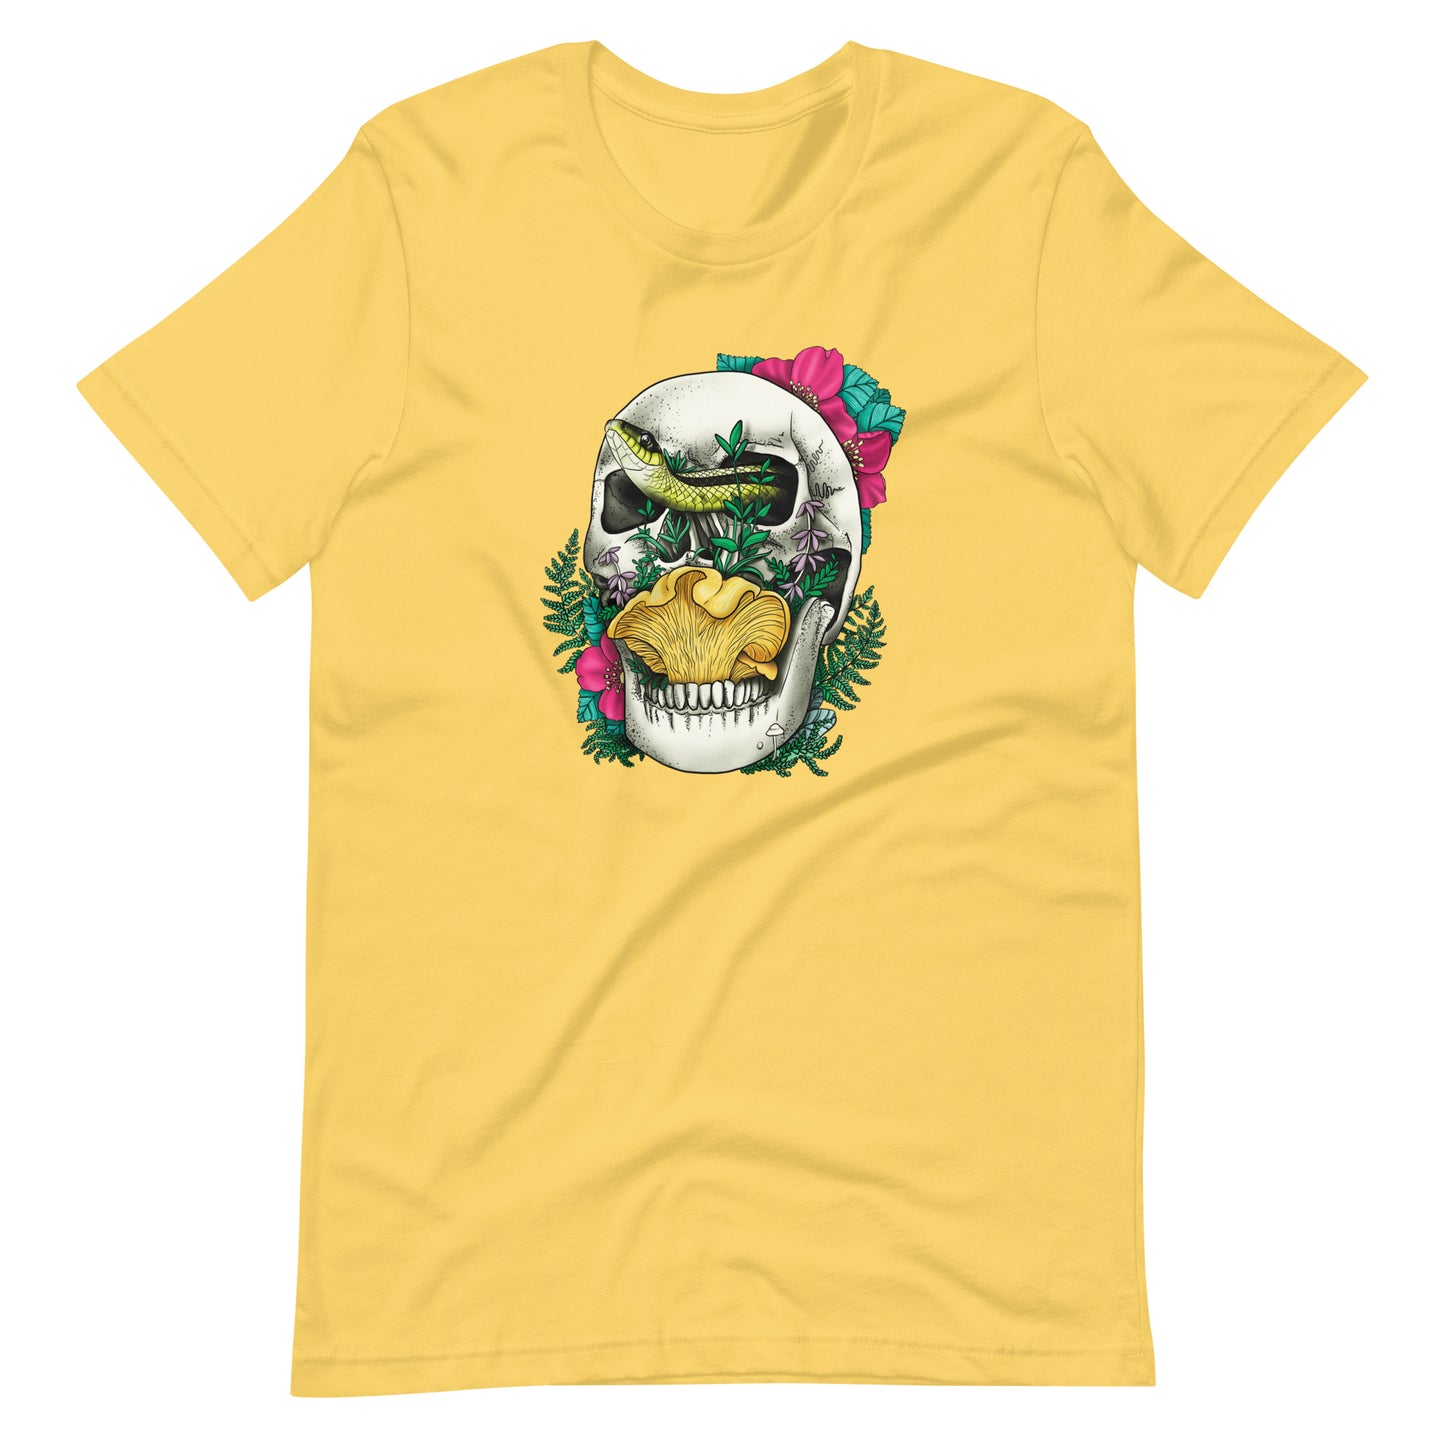 Skull, Snake and Chanterelle Mushroom | Unisex T-Shirt | Morbid Mushroom Apparel